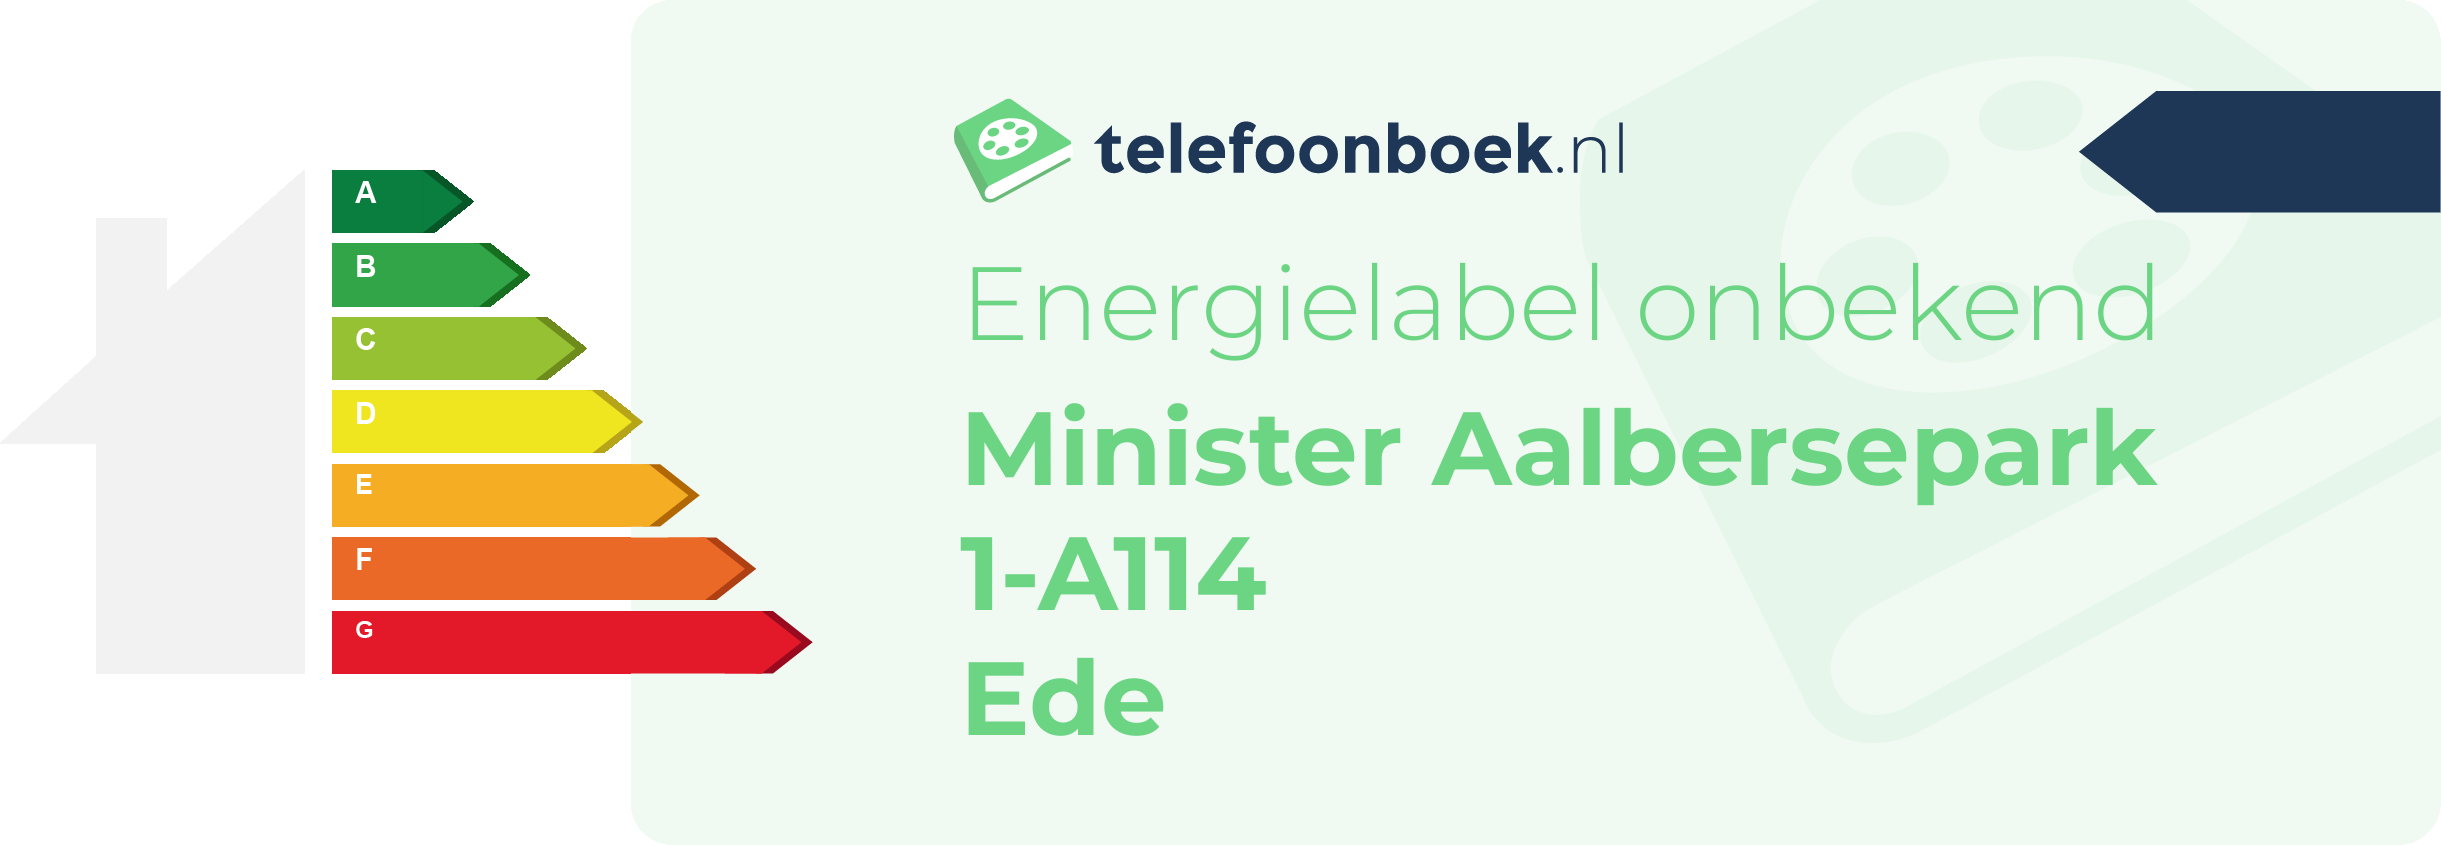 Energielabel Minister Aalbersepark 1-A114 Ede